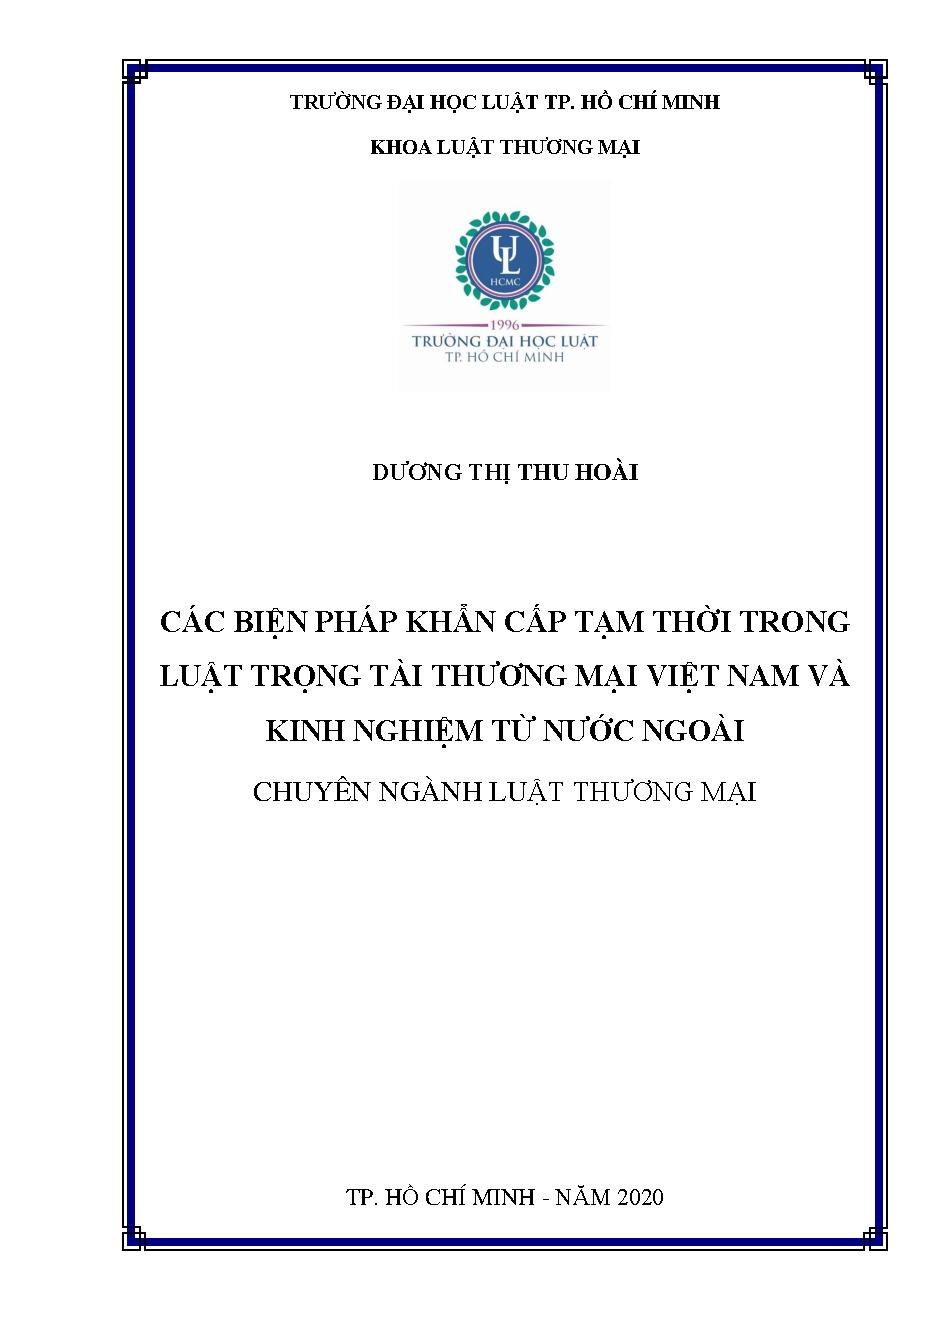 Các biện pháp khẩn cấp tạm thời trong luật trọng tài thương mại tại Việt Nam và kinh nghiệm từ nước ngoài